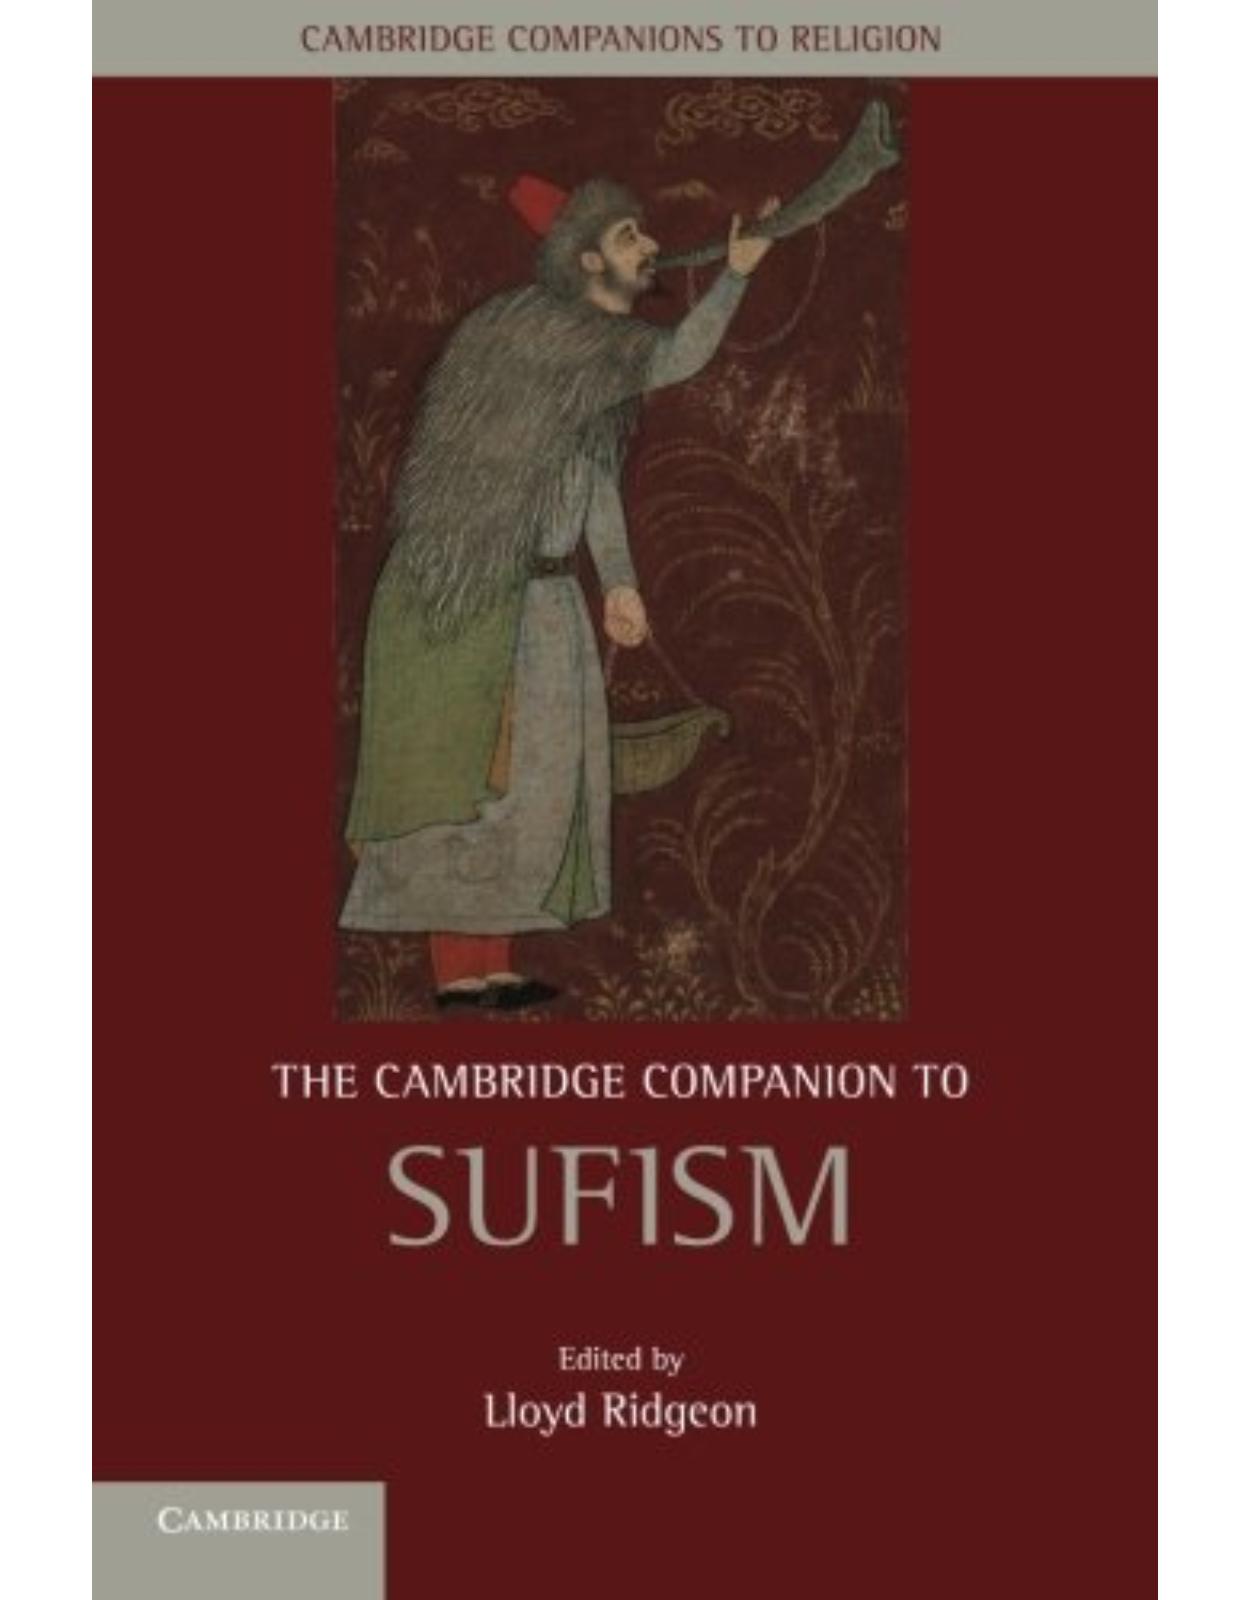 The Cambridge Companion to Sufism (Cambridge Companions to Religion) 